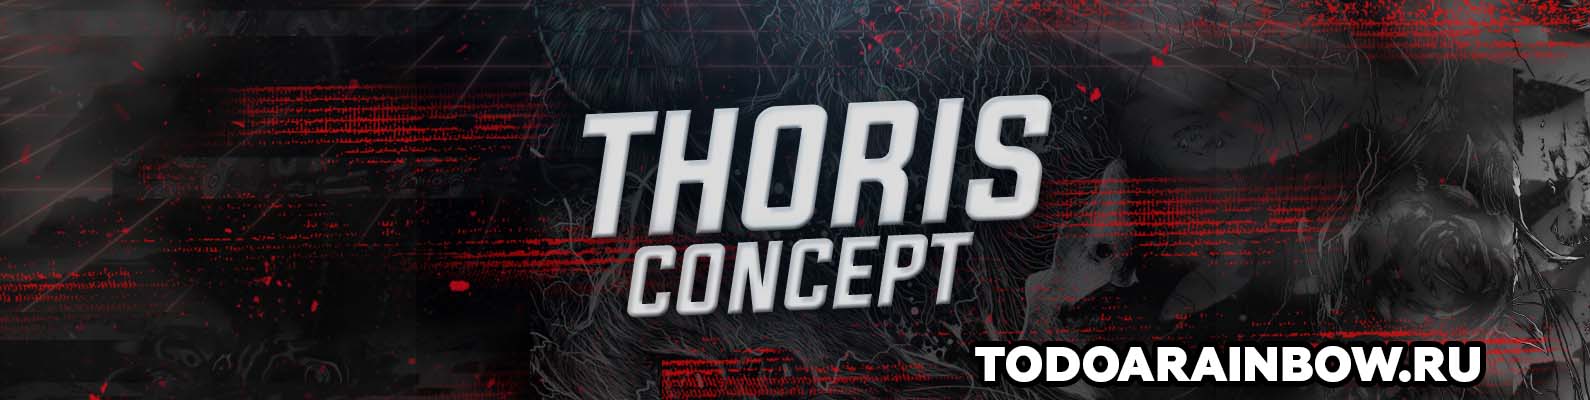 PSD шаблон Thoris Concept